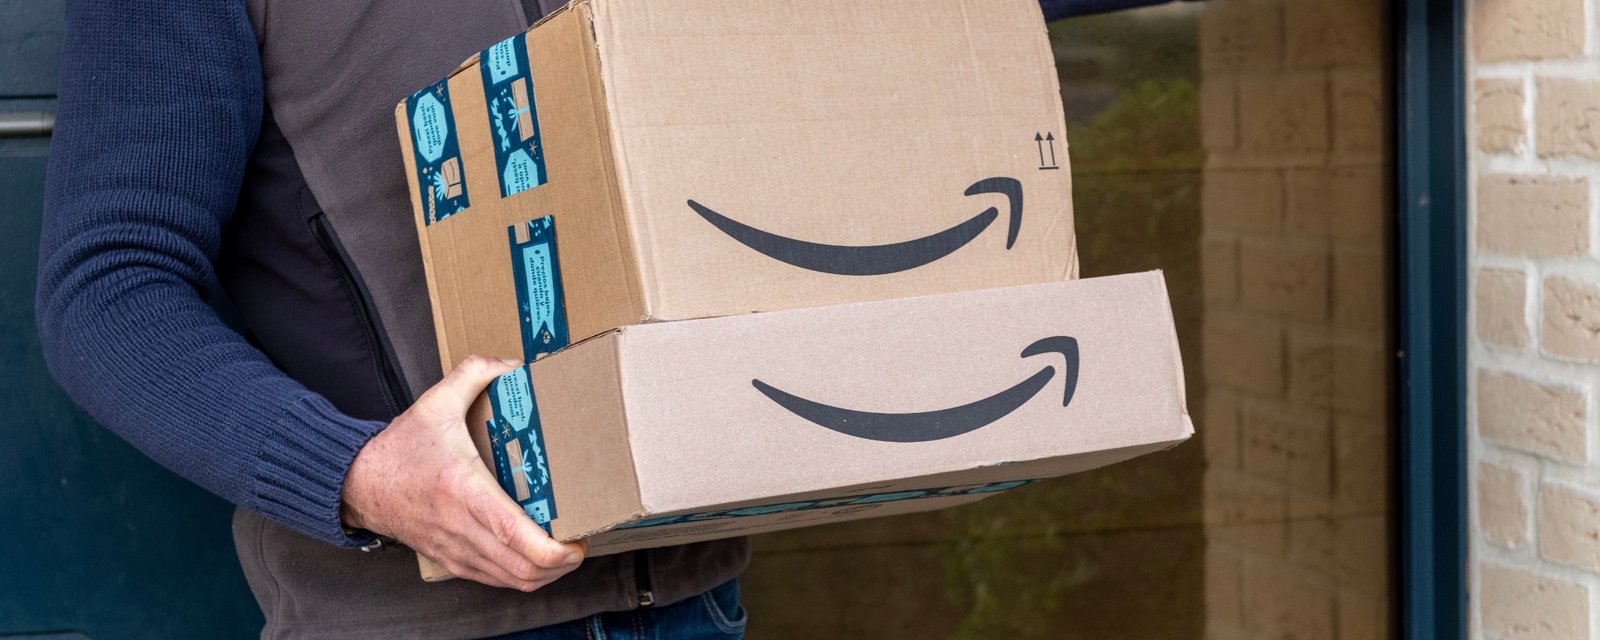 De nombreux Québécois annulent leur abonnement Amazon en raison du délai de livraison